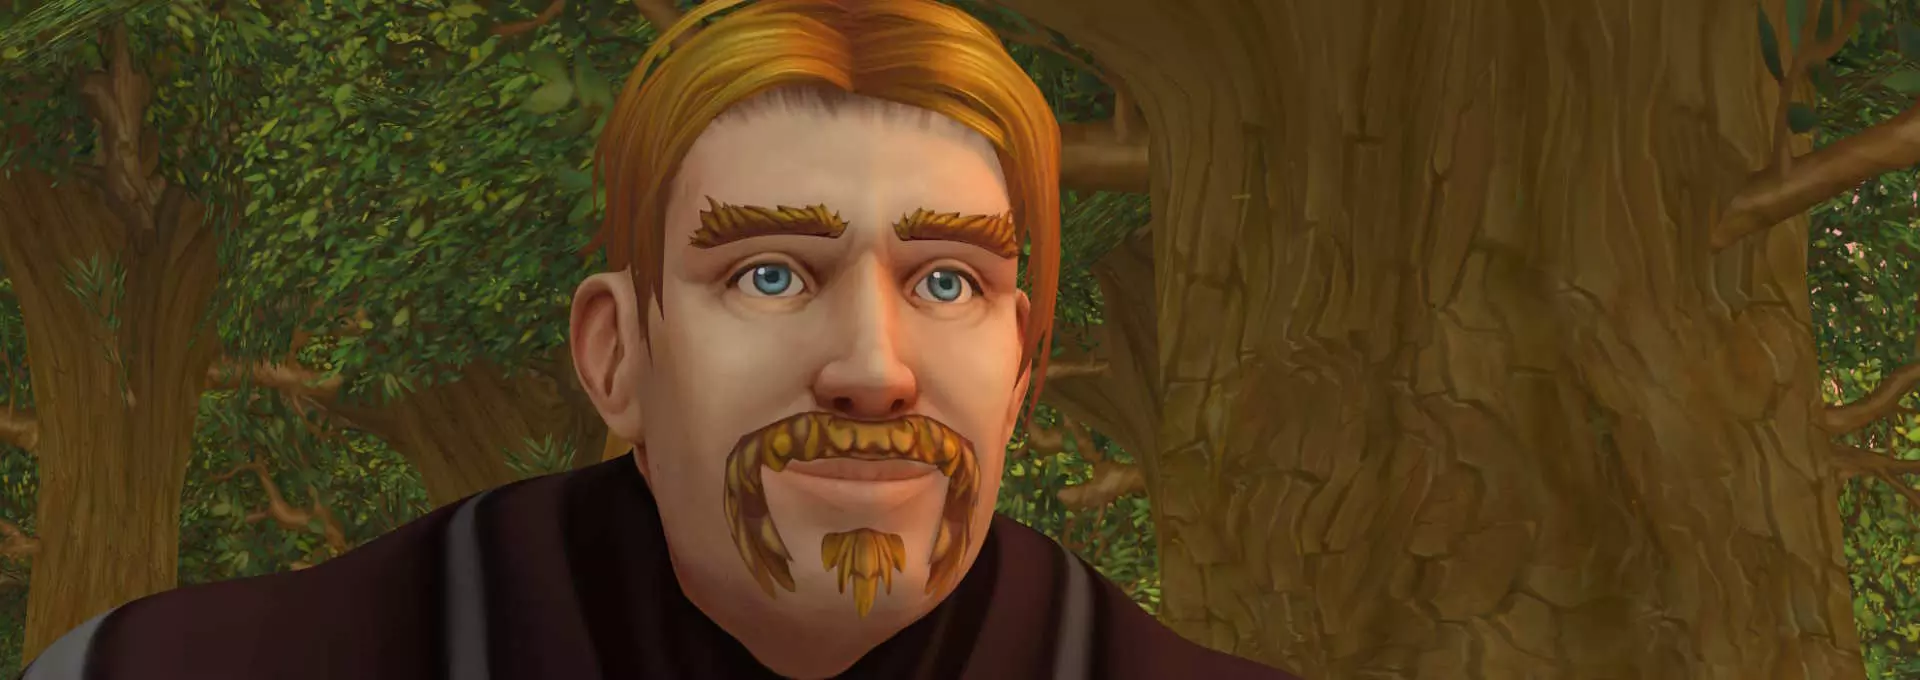 Animert bilde fra dataspillet World of Warcraft. En mannlig karakter med blond-oransje hår og bart. Han smiler.